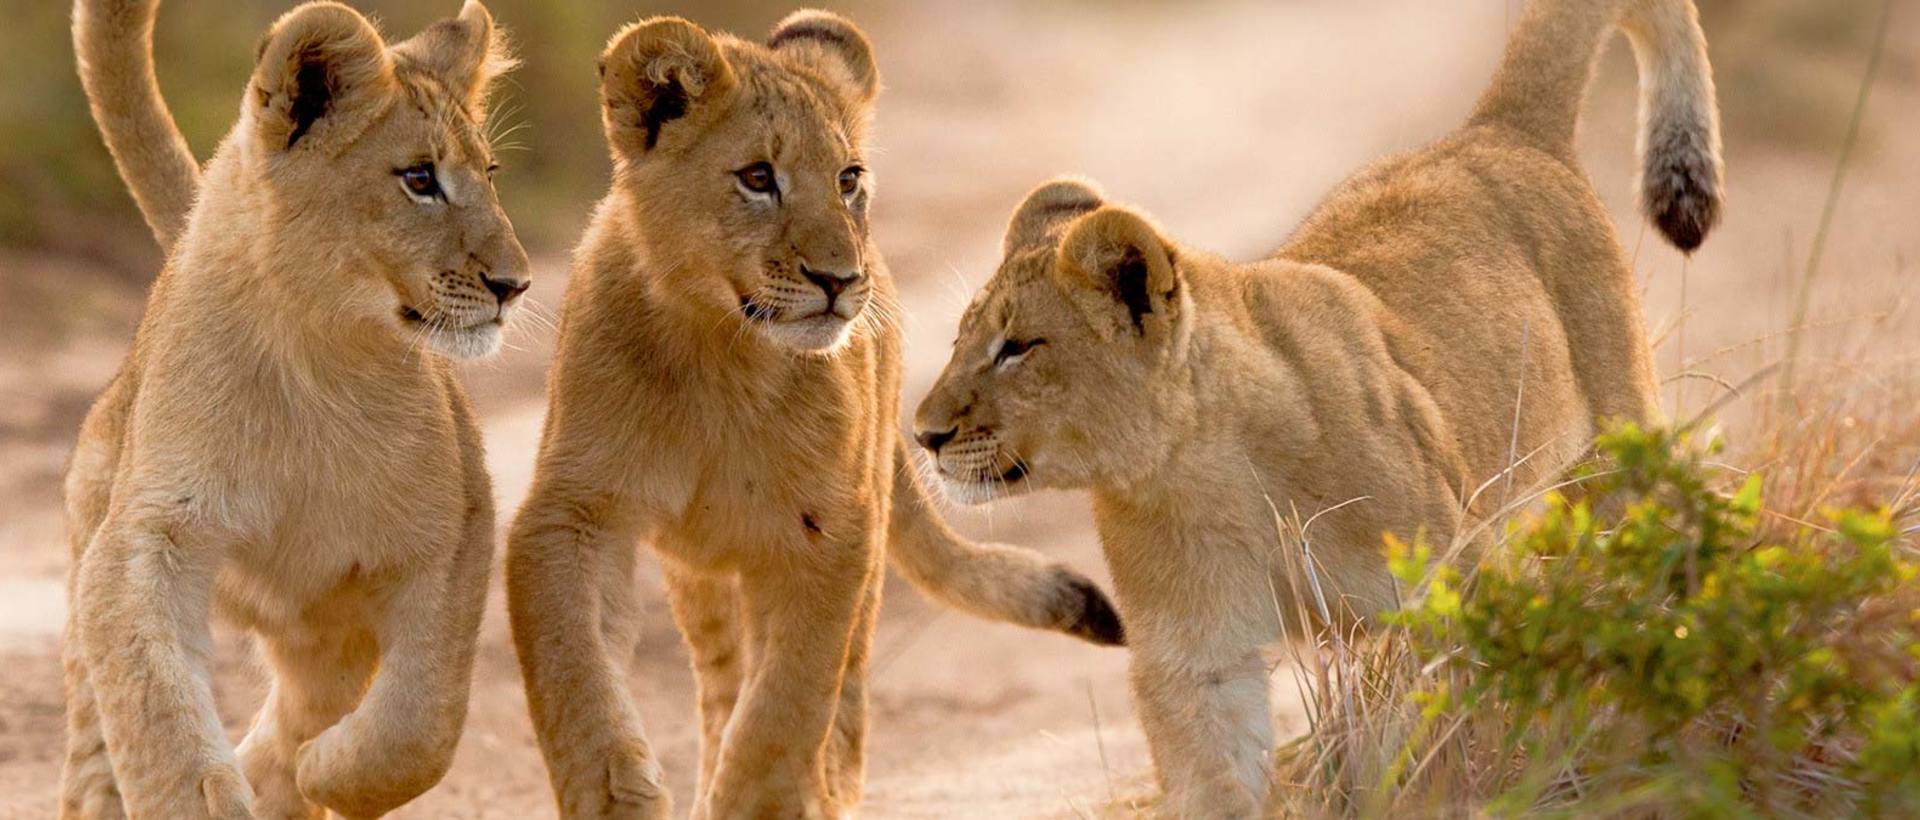 Kariega Lion Cubs